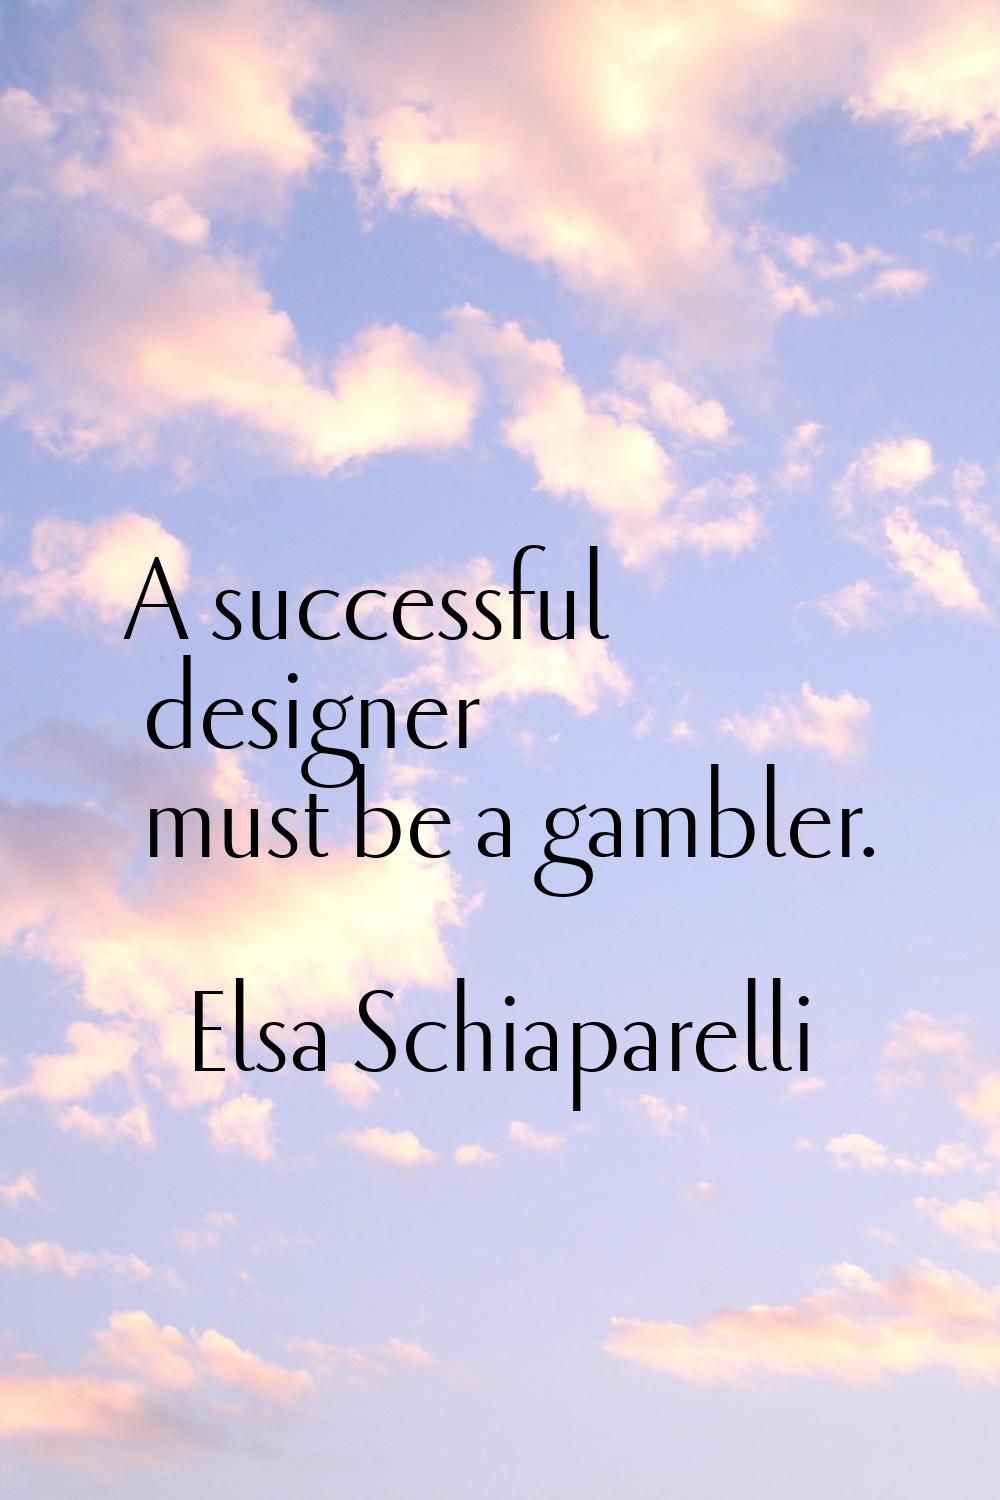 A successful designer must be a gambler.